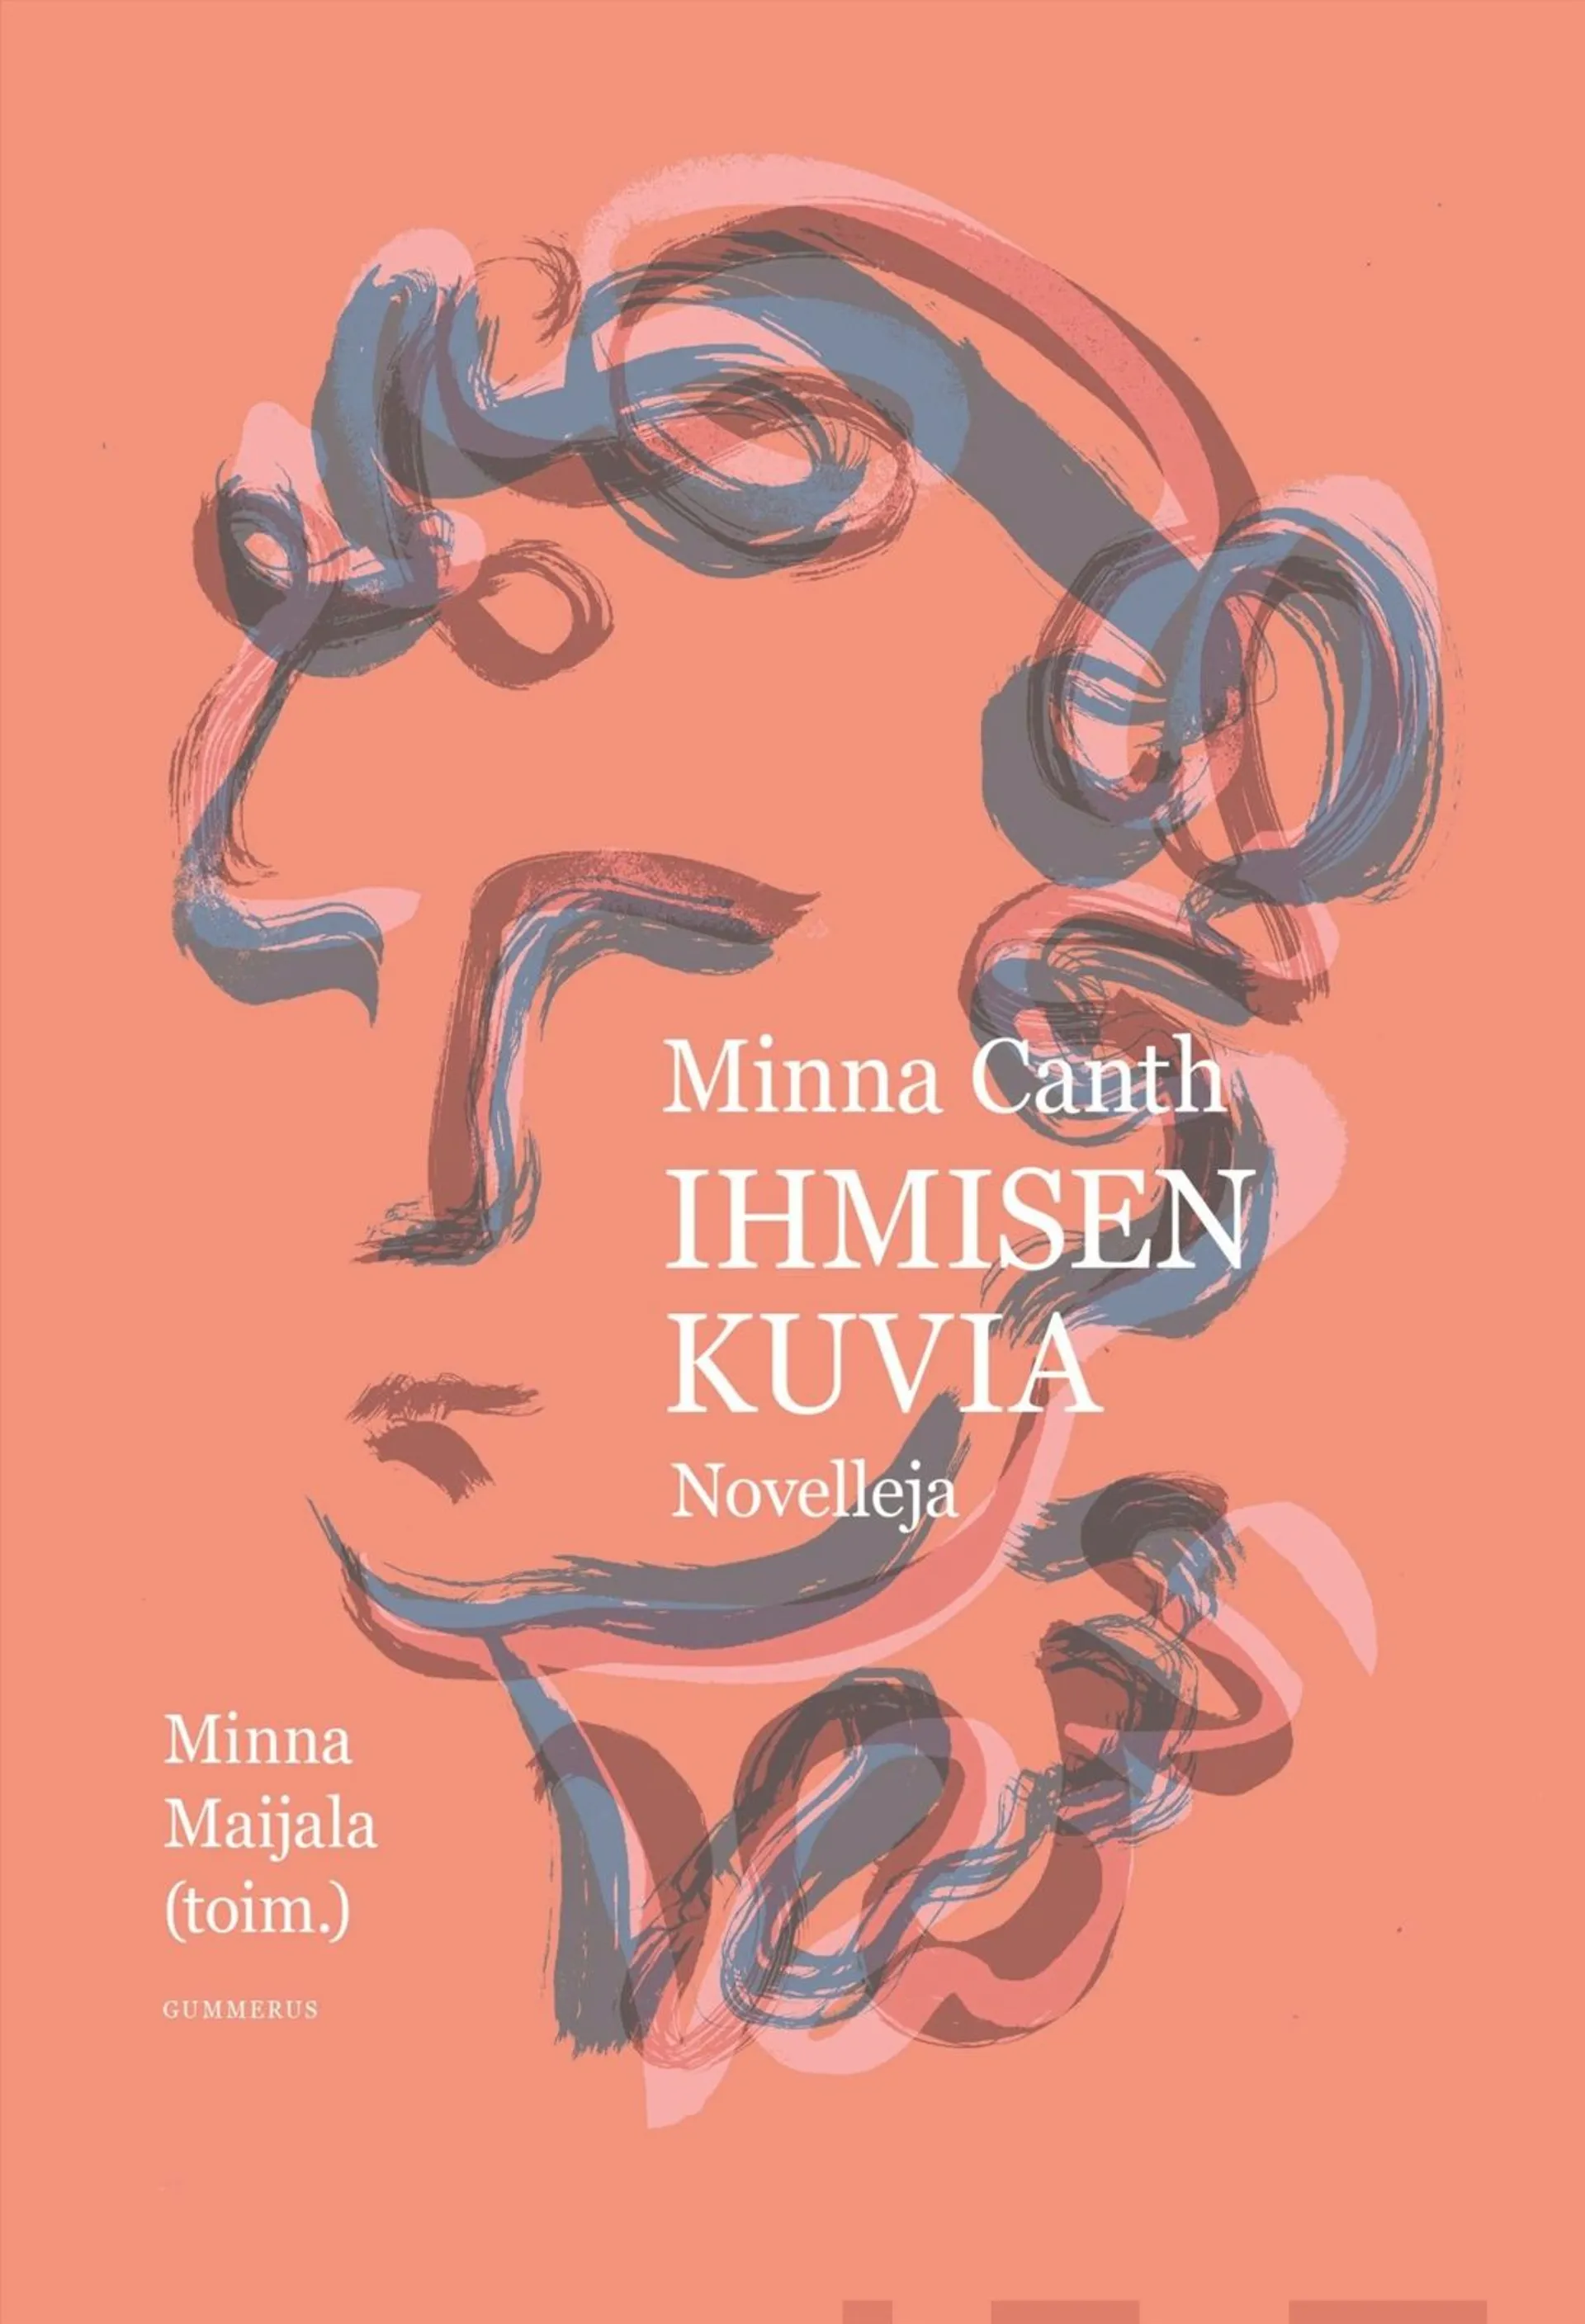 Minna Canth - Ihmisen kuvia - Novelleja